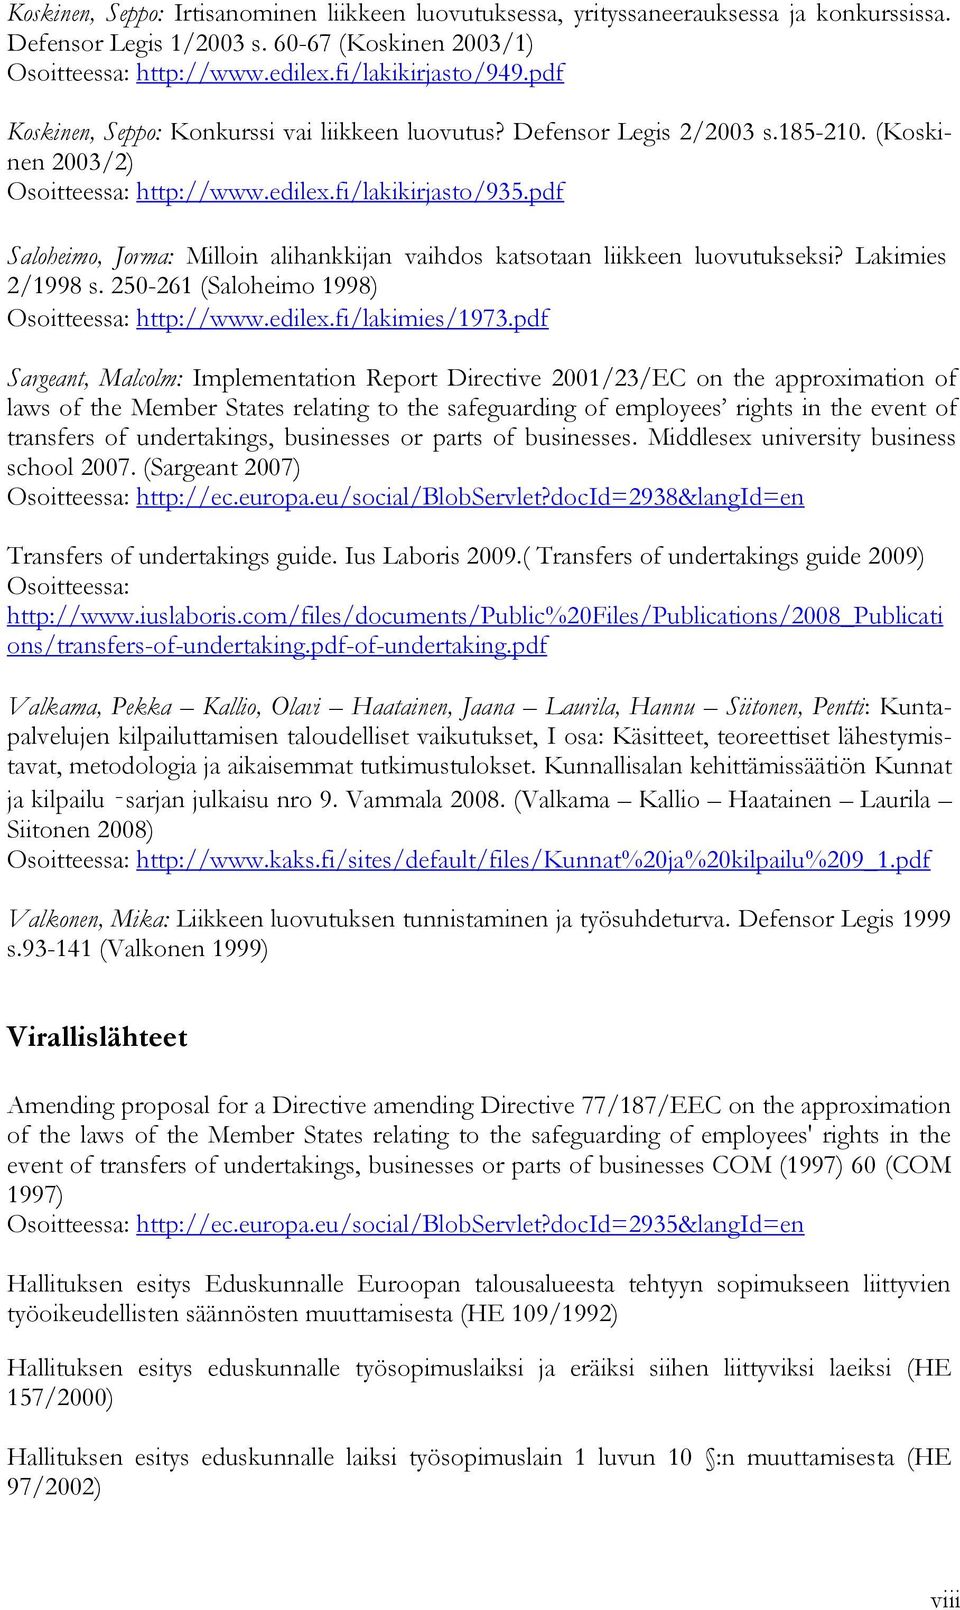 pdf Saloheimo, Jorma: Milloin alihankkijan vaihdos katsotaan liikkeen luovutukseksi? Lakimies 2/1998 s. 250-261 (Saloheimo 1998) Osoitteessa: http://www.edilex.fi/lakimies/1973.